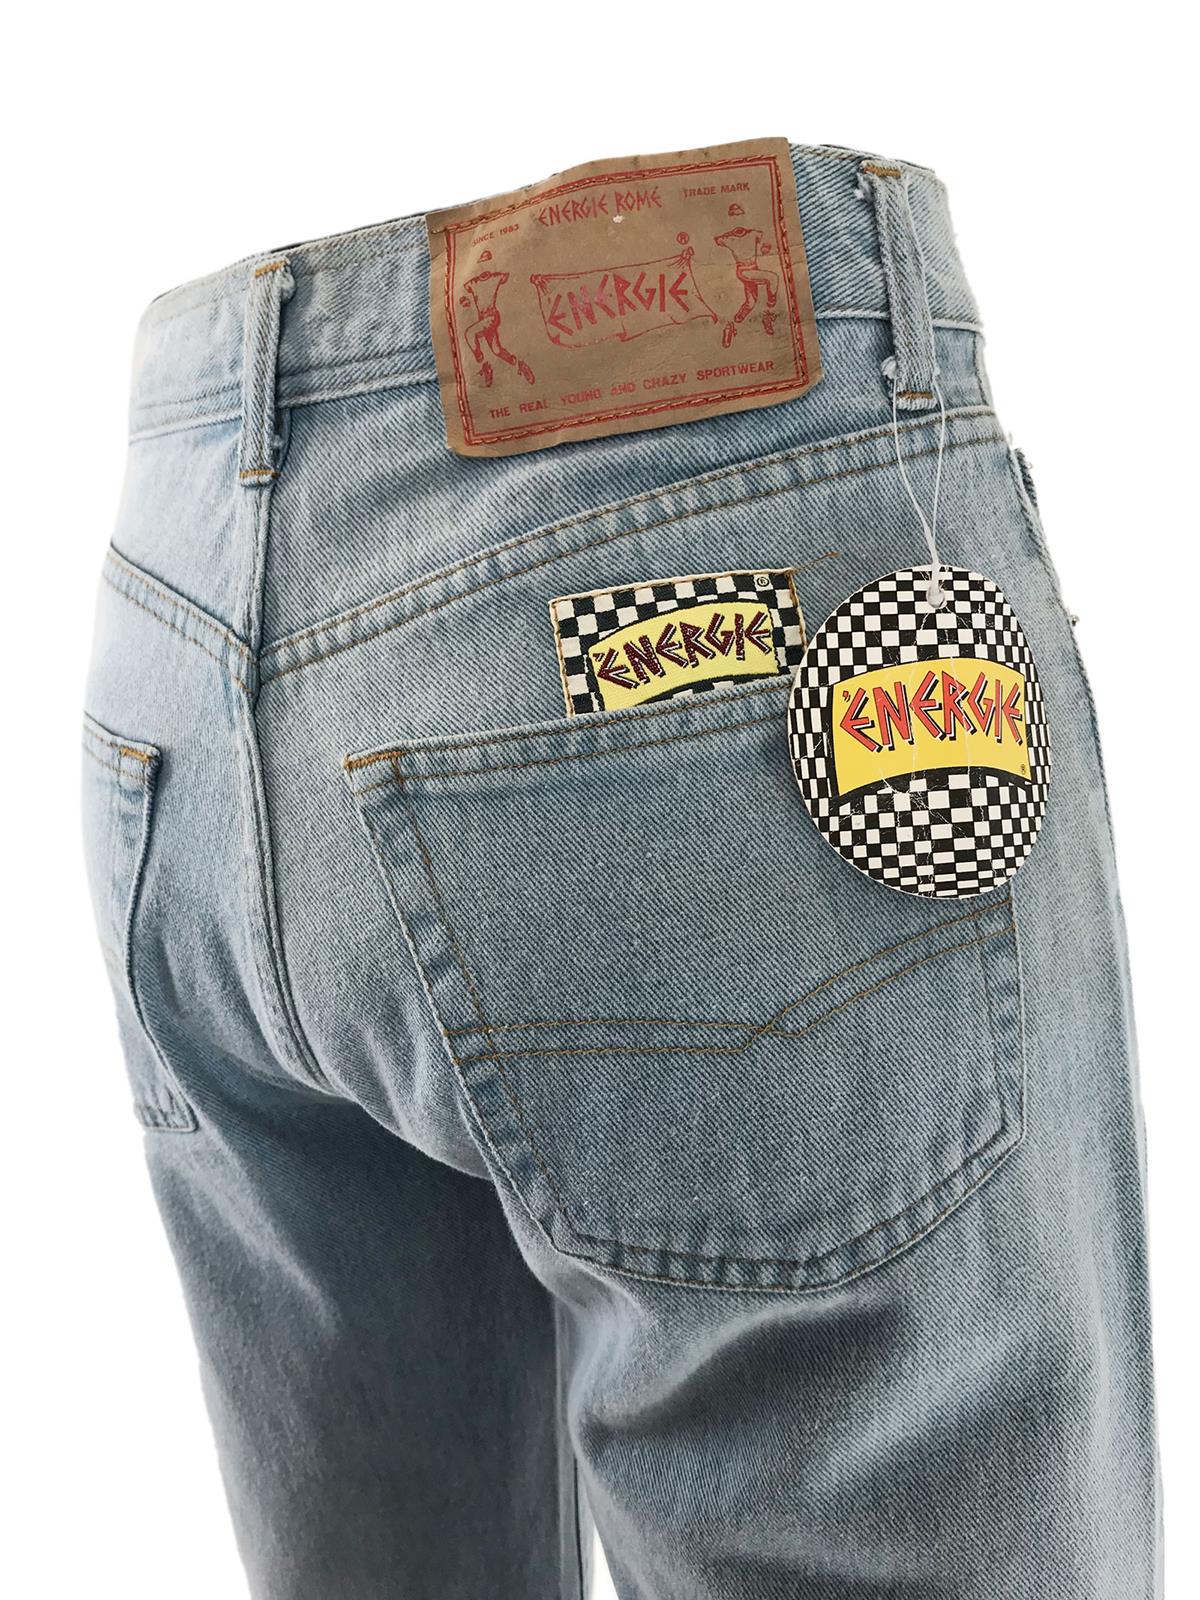 bijkeuken bestuurder schroef ENERGIE Karpacho Vintage Light Jeans (Late Eighties)